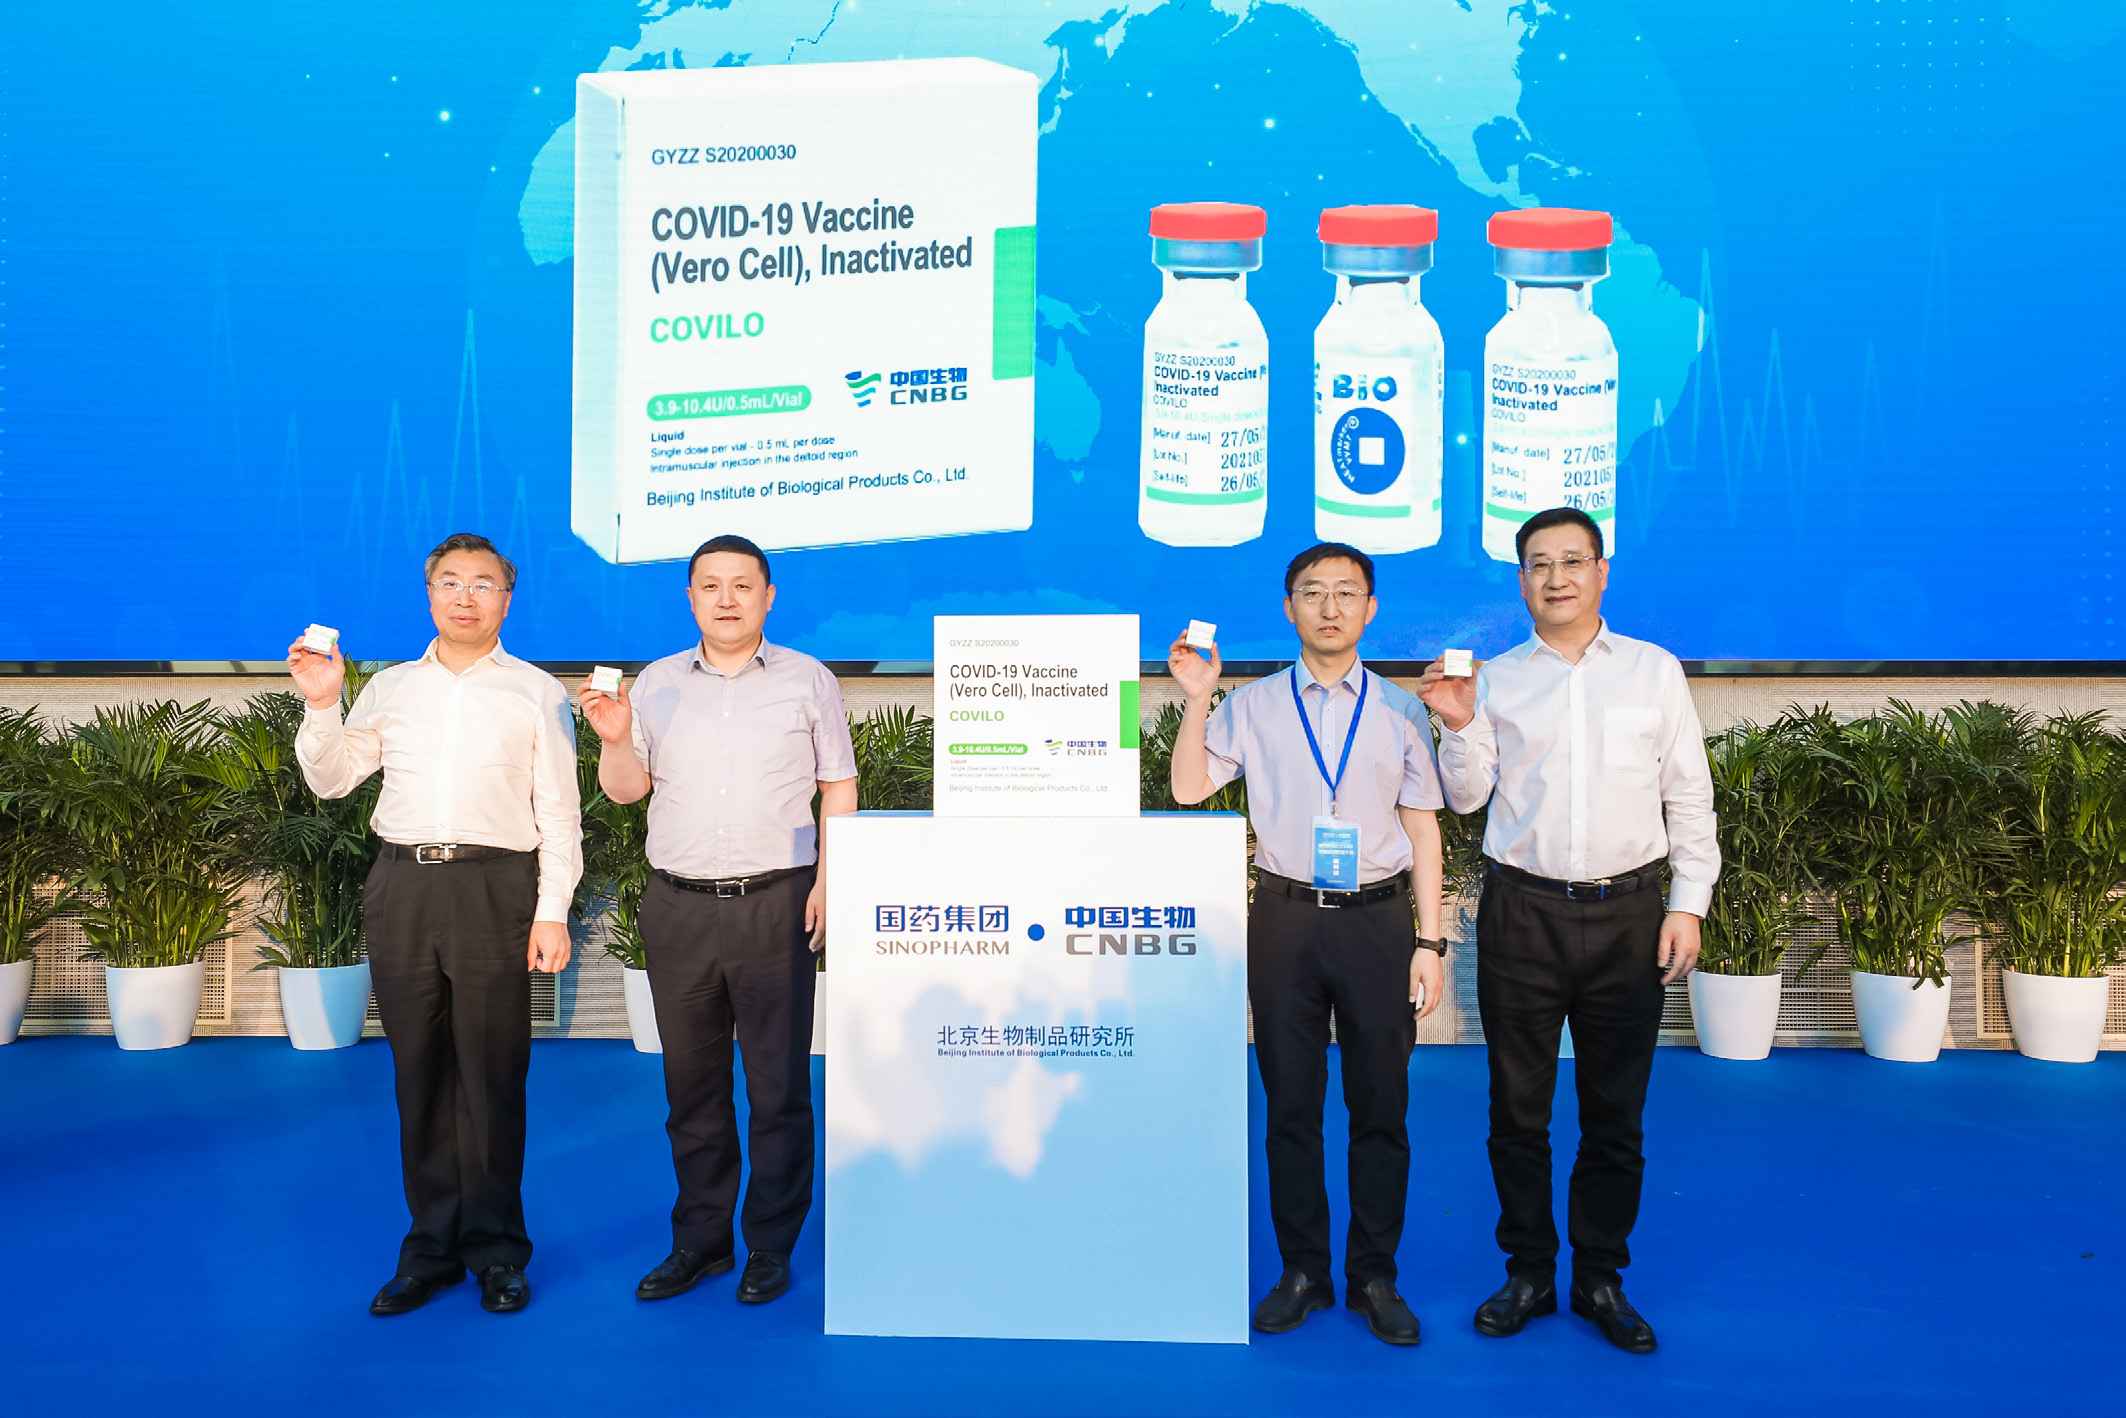 2021年6月1日，老哥俱乐部论坛集团中国生物北京生物所供应COVAX 首批新冠疫苗下线。这也是中国供应COVAX 的首批新冠疫苗正式下线